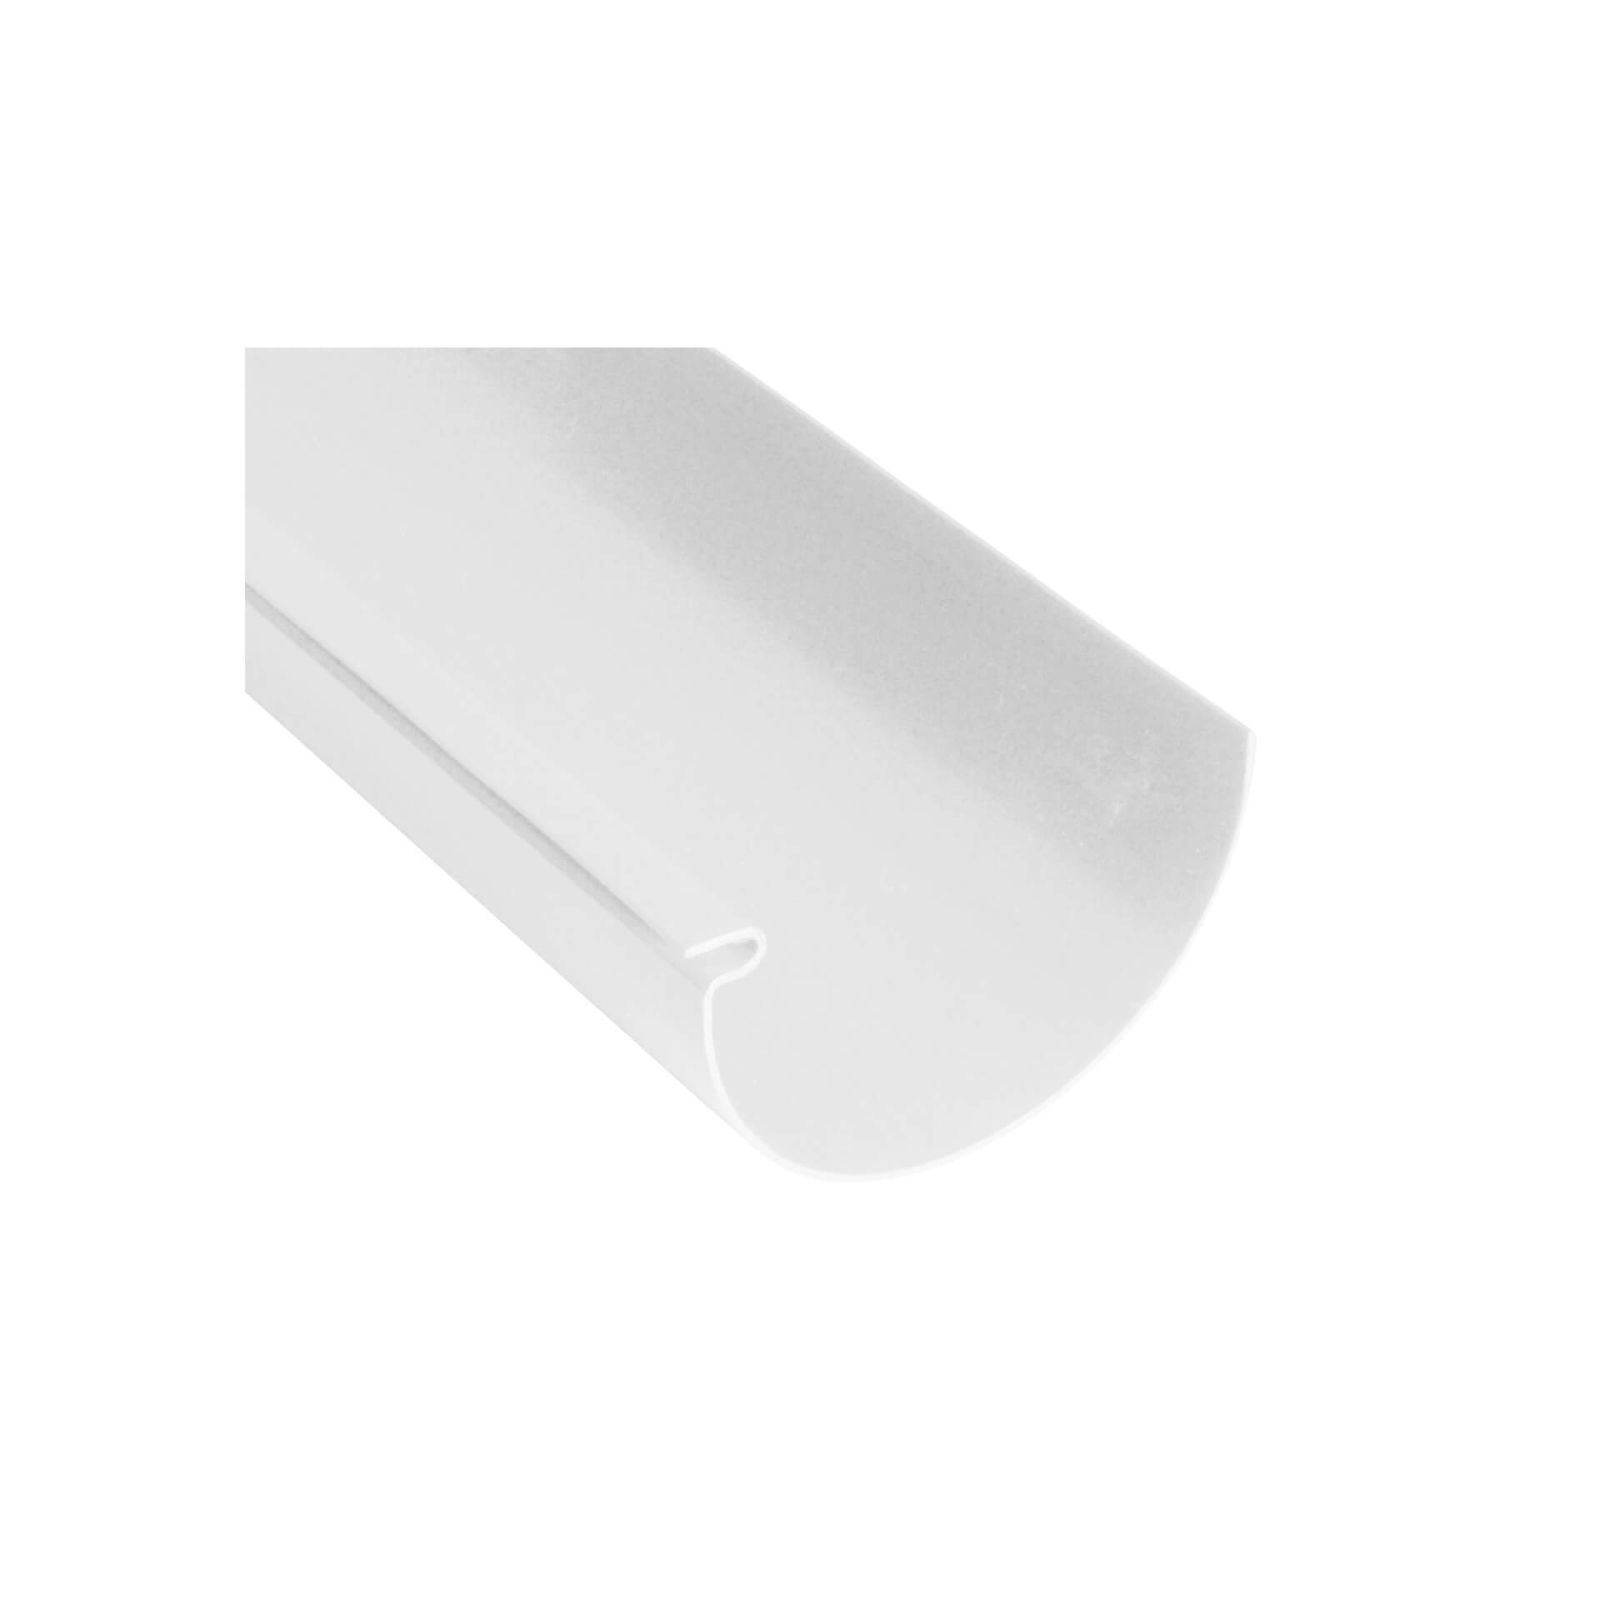 Kunststoff Dachrinnen Sparpaket 8 m | Ø 150/110 mm | Farbe Weiß